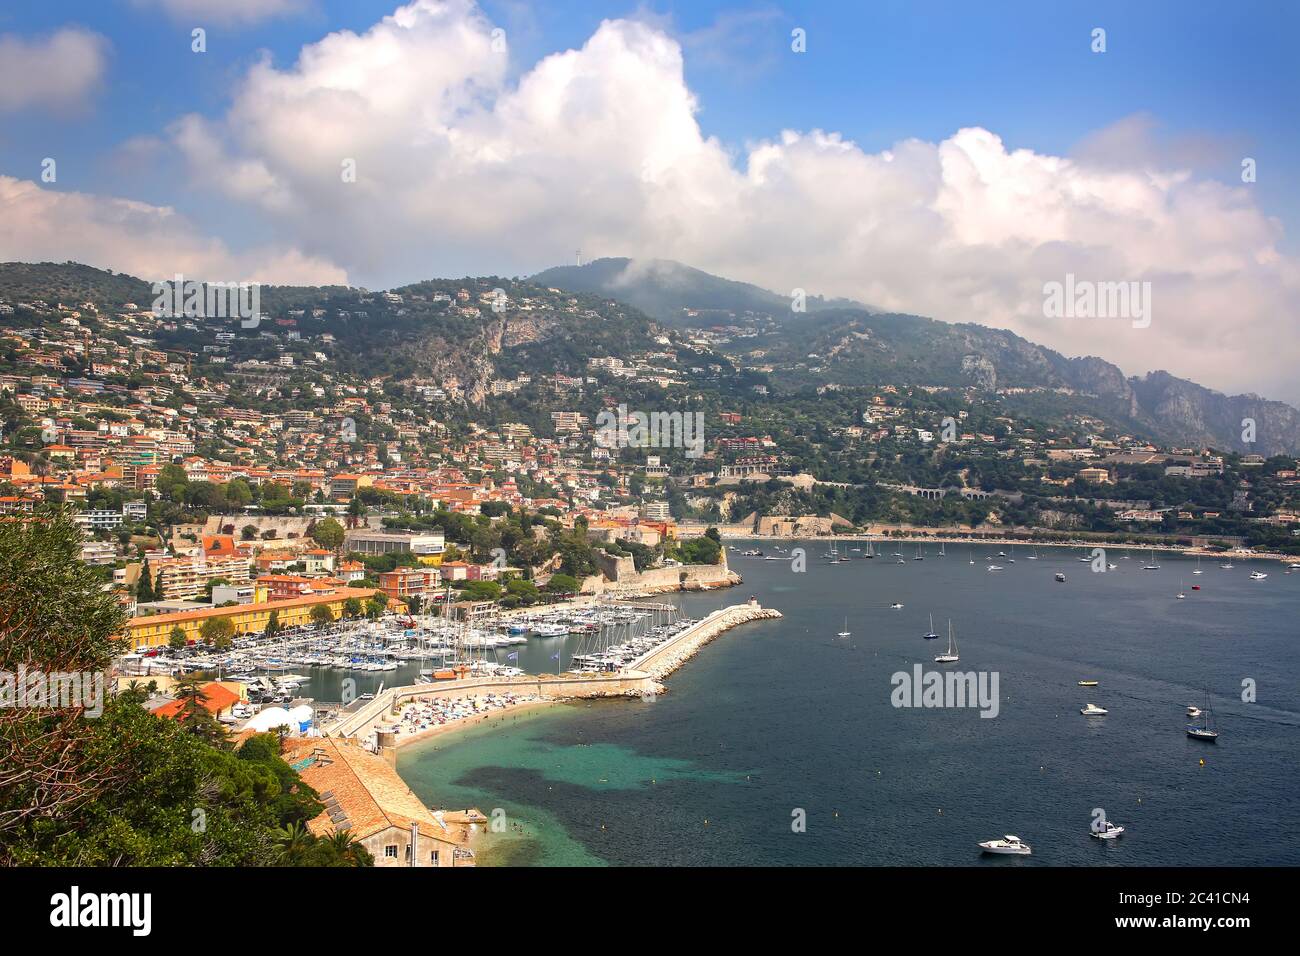 Splendida vista sulla città francese di Villefranche sur Mer, sulla costa del mare Mediterraneo, con un porto turistico, località turistica, Francia. Foto Stock